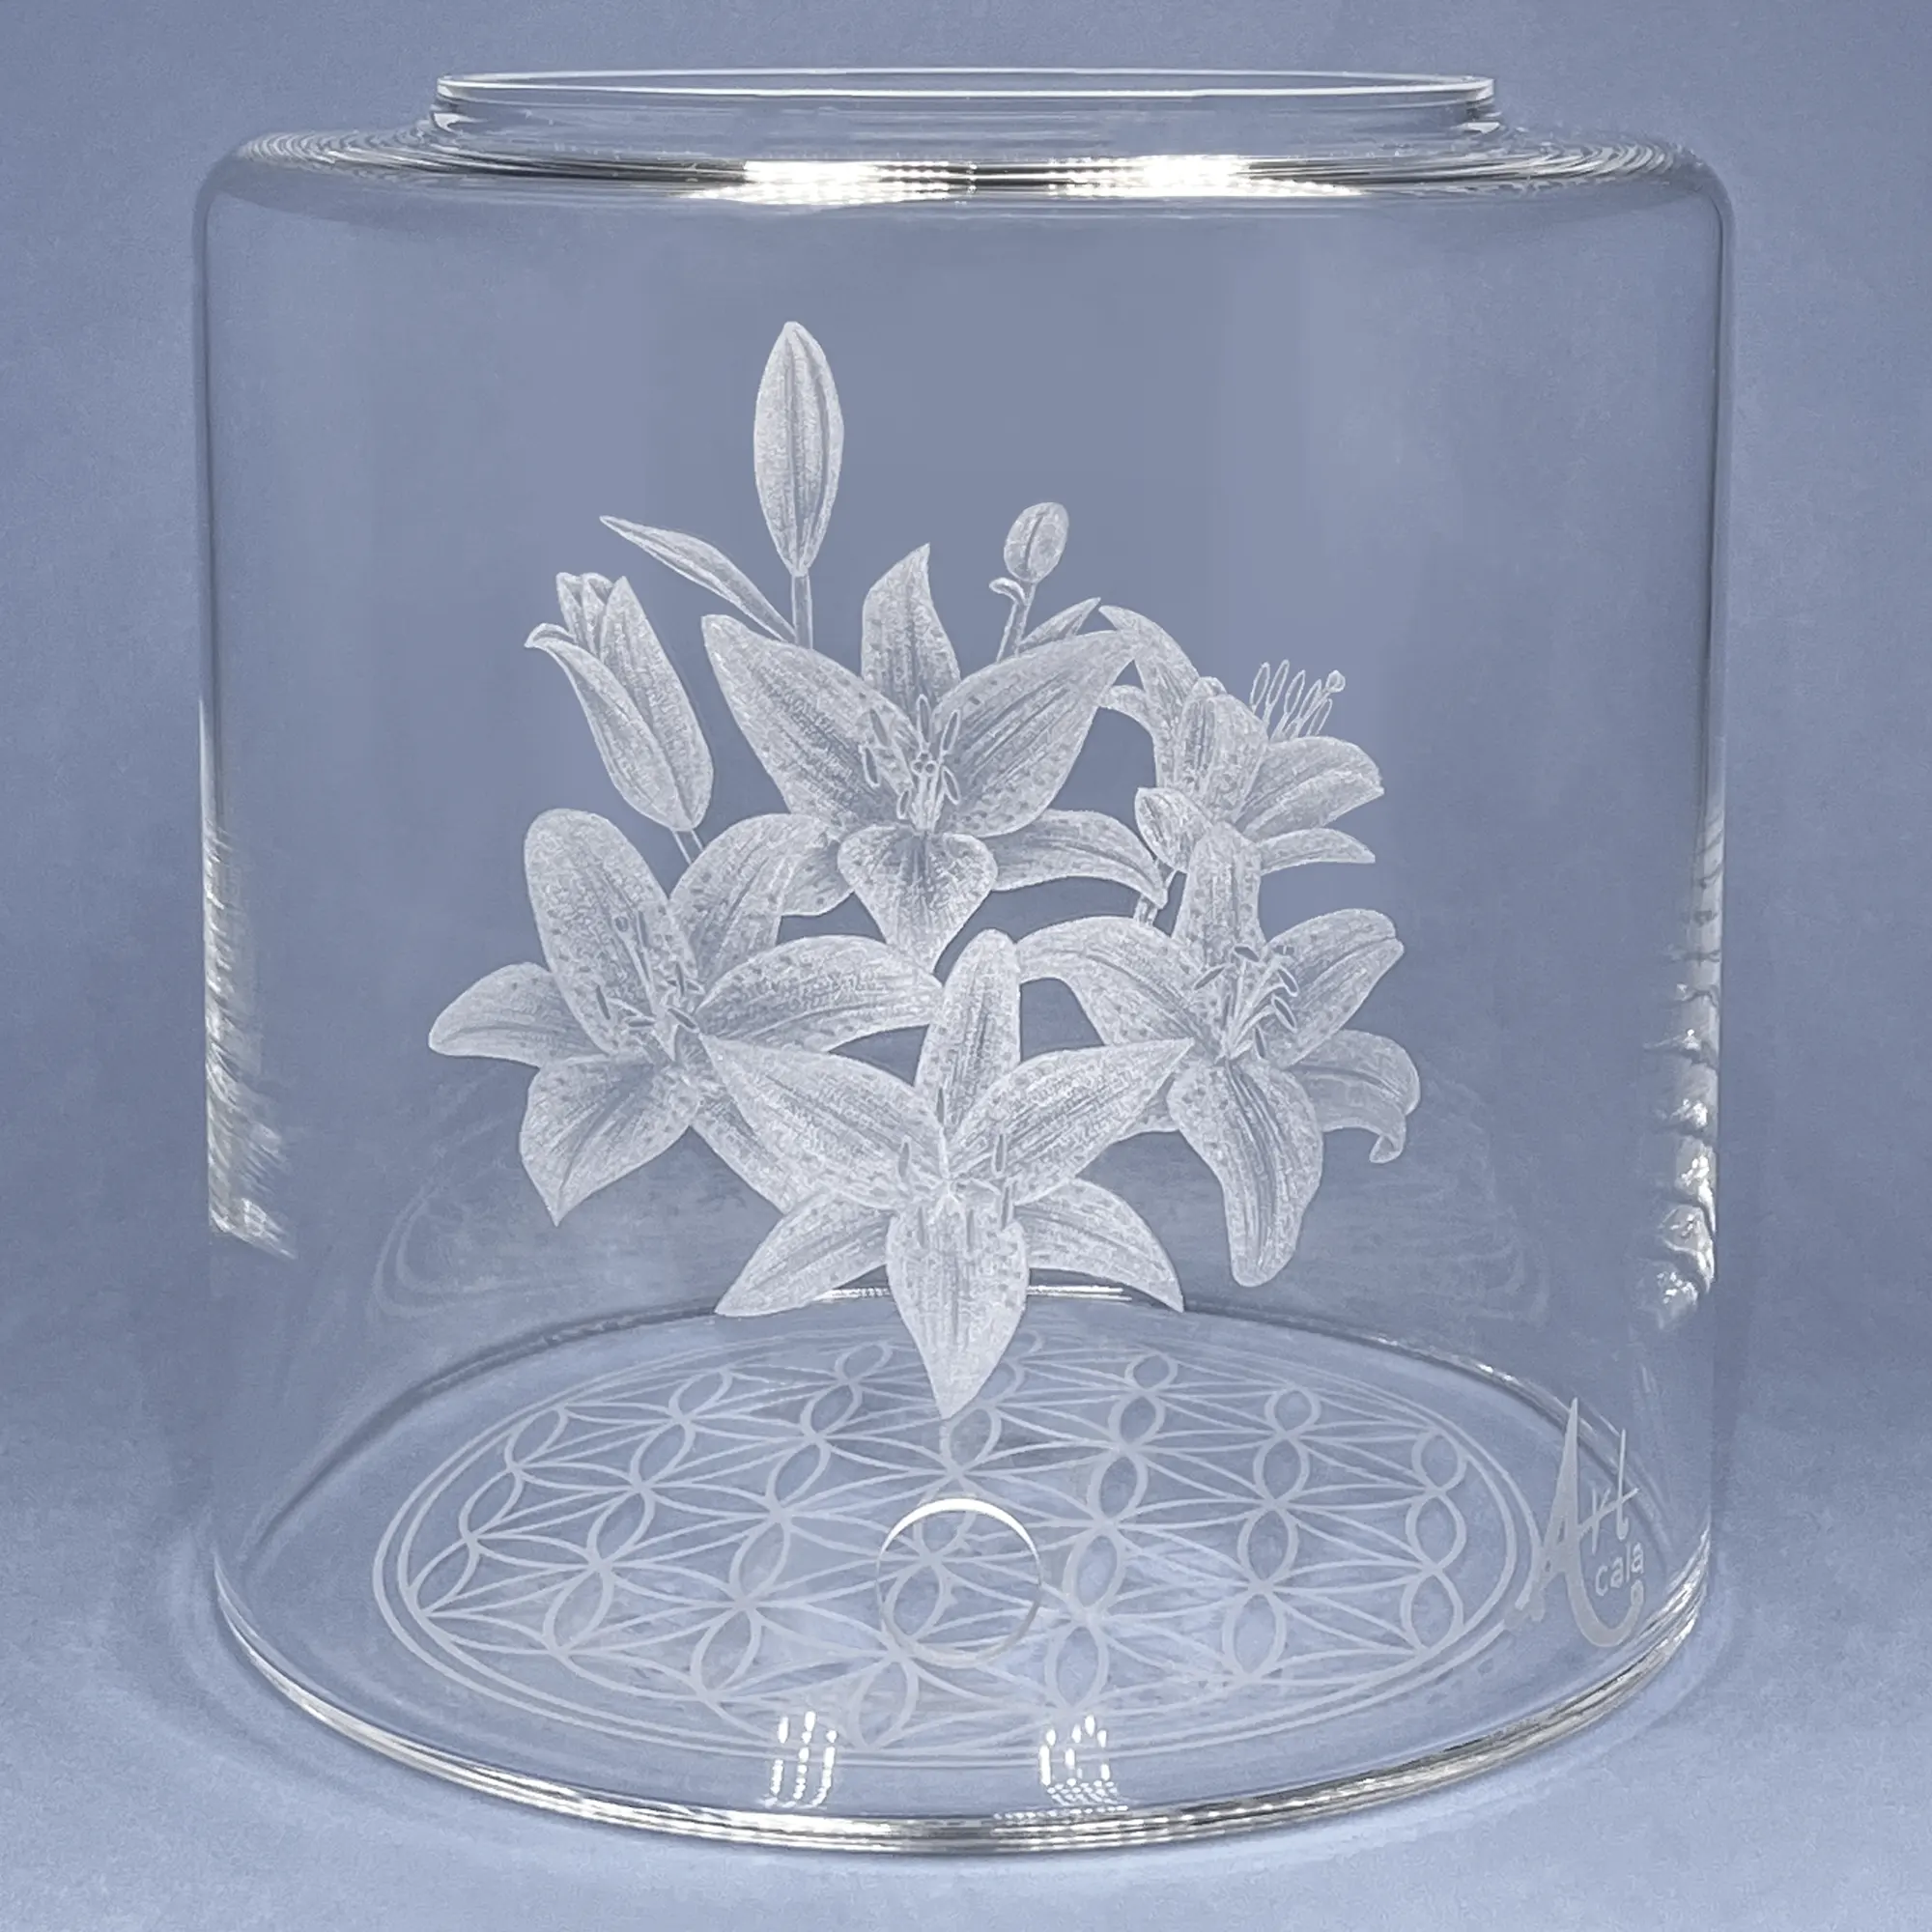 Vorratstank aus Glas für einen Acala 8LWasserfilter in klarem Glas mit gravierten aufgeblühten Lilien.